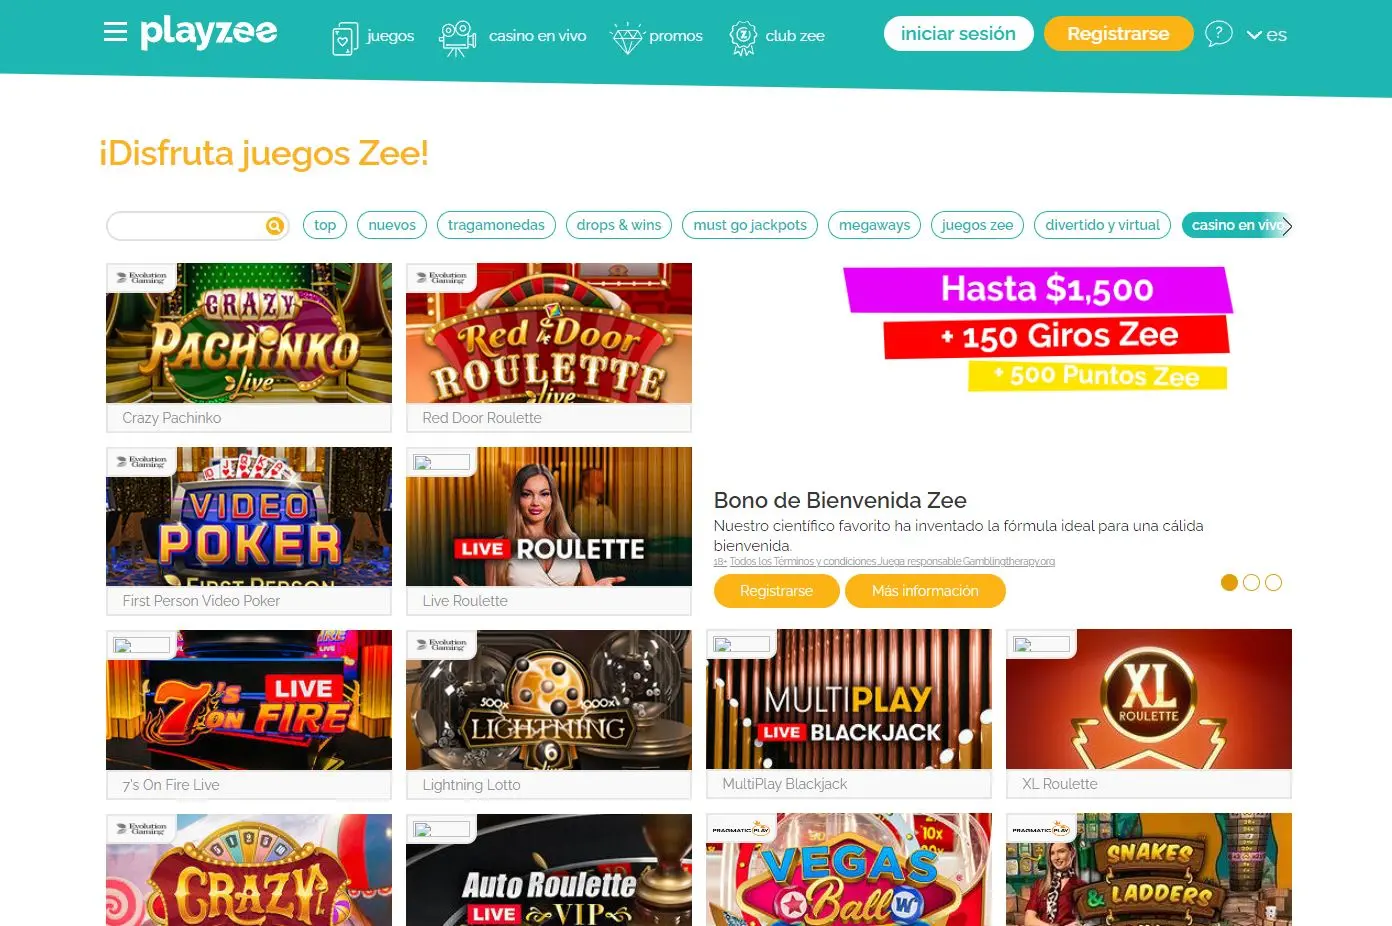 Juegos de Casino en Vivo en Playzee